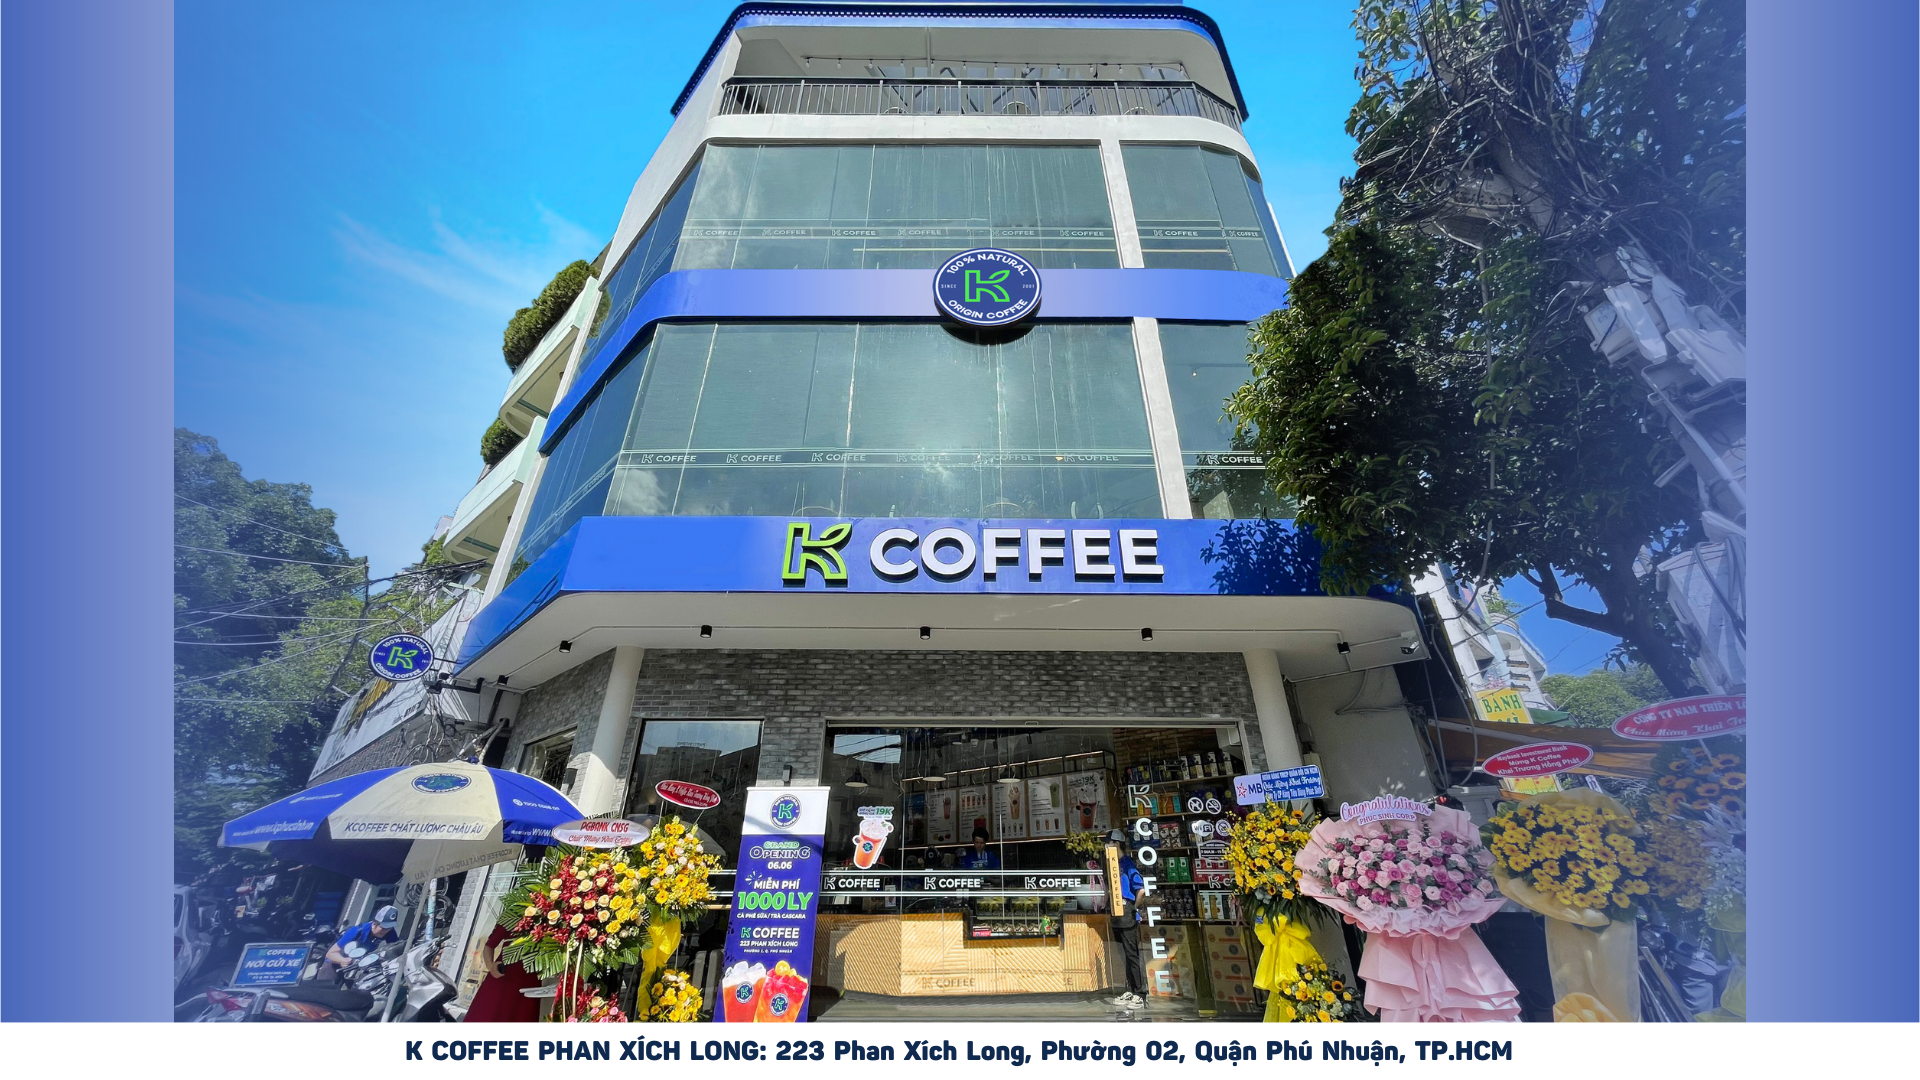 Ông chủ chuỗi K COFFEE: Chỉ bán cà phê nguyên chất - Ảnh 3.